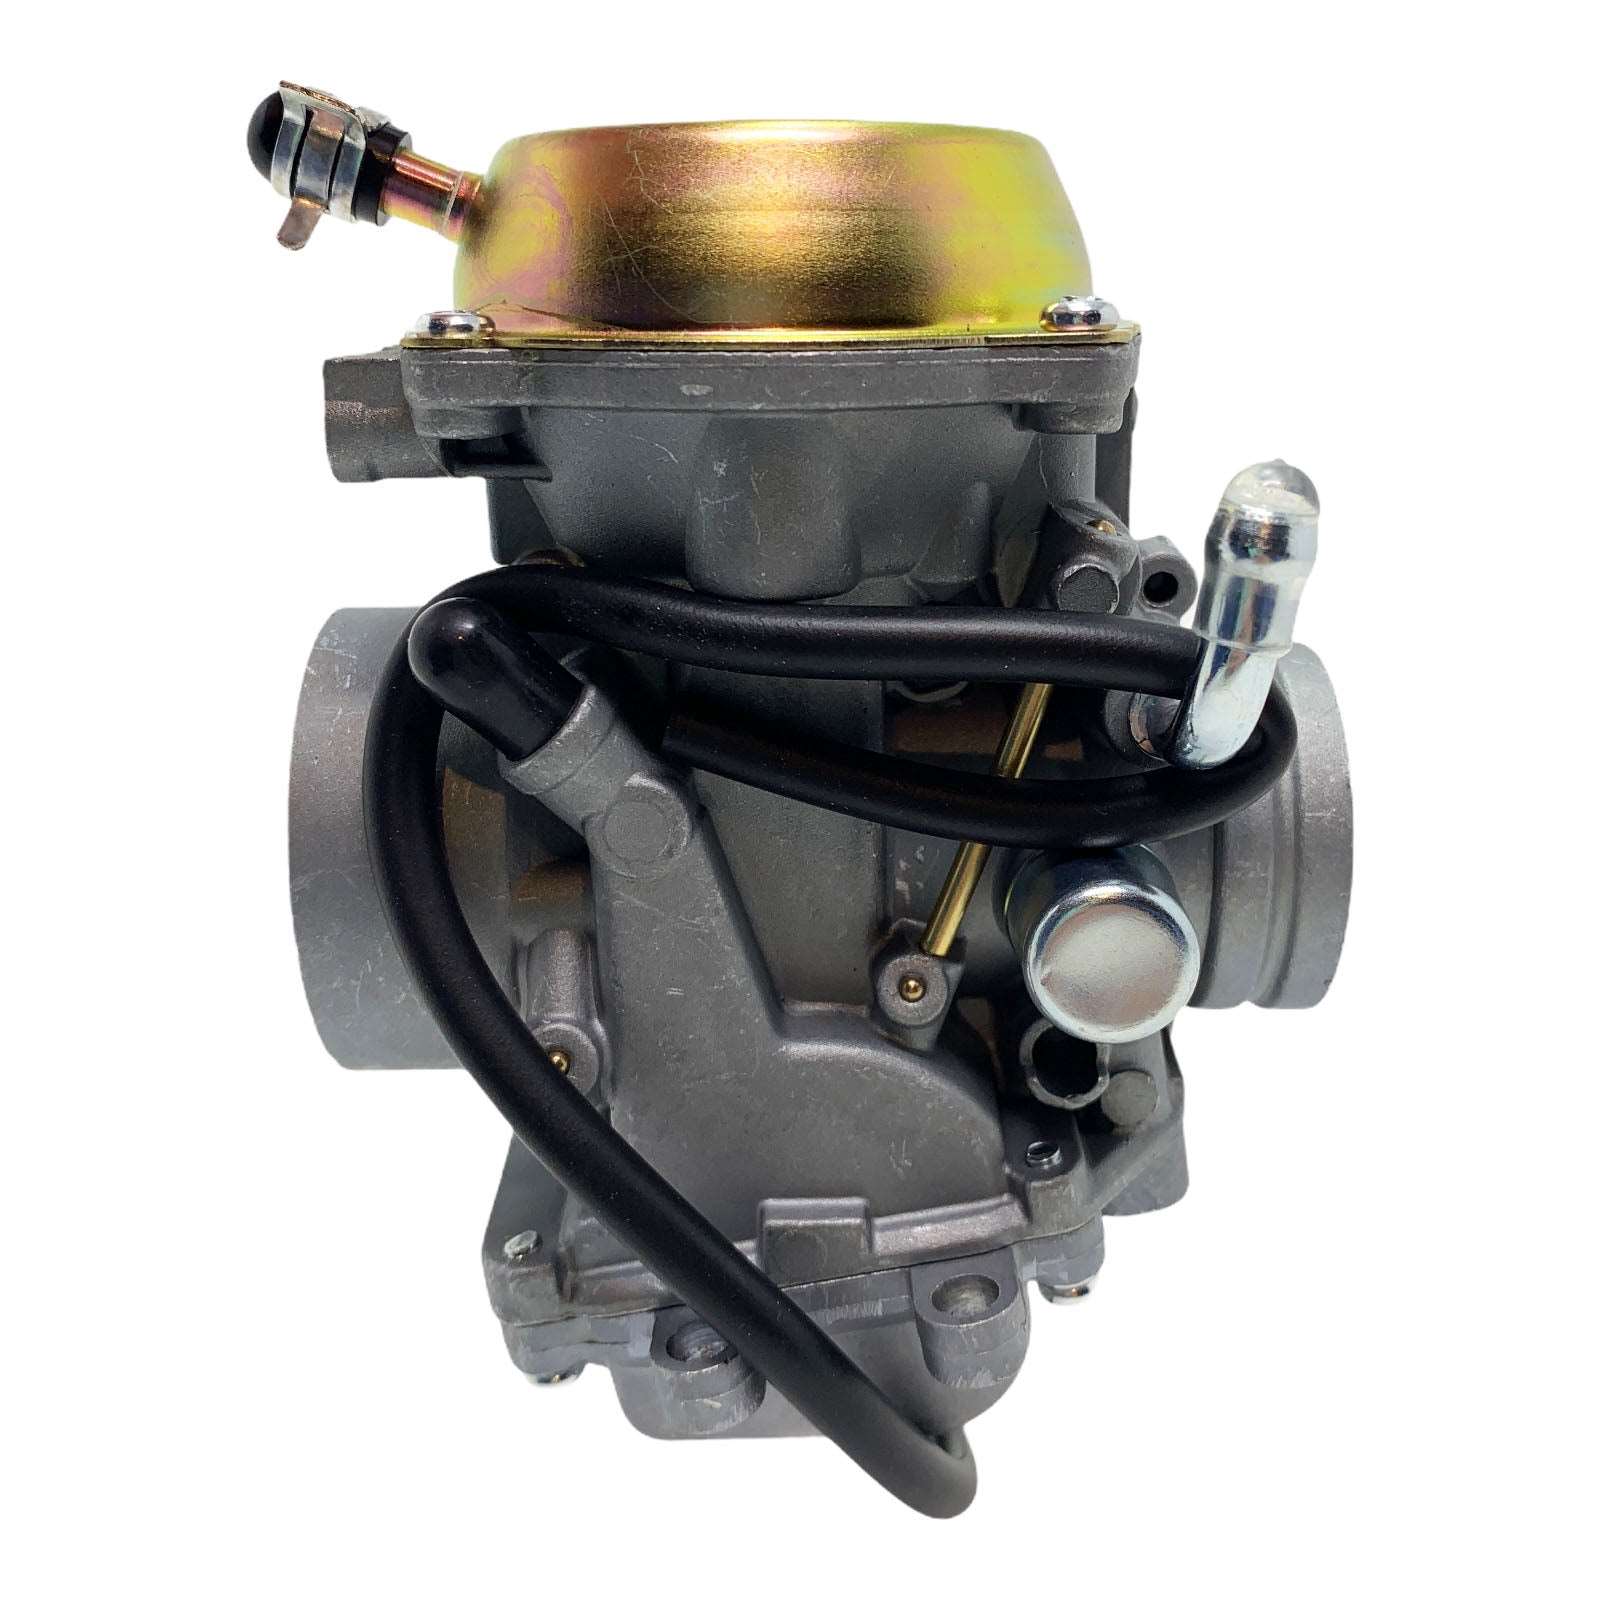 Duraforce 1253493, Carburetor For Polaris